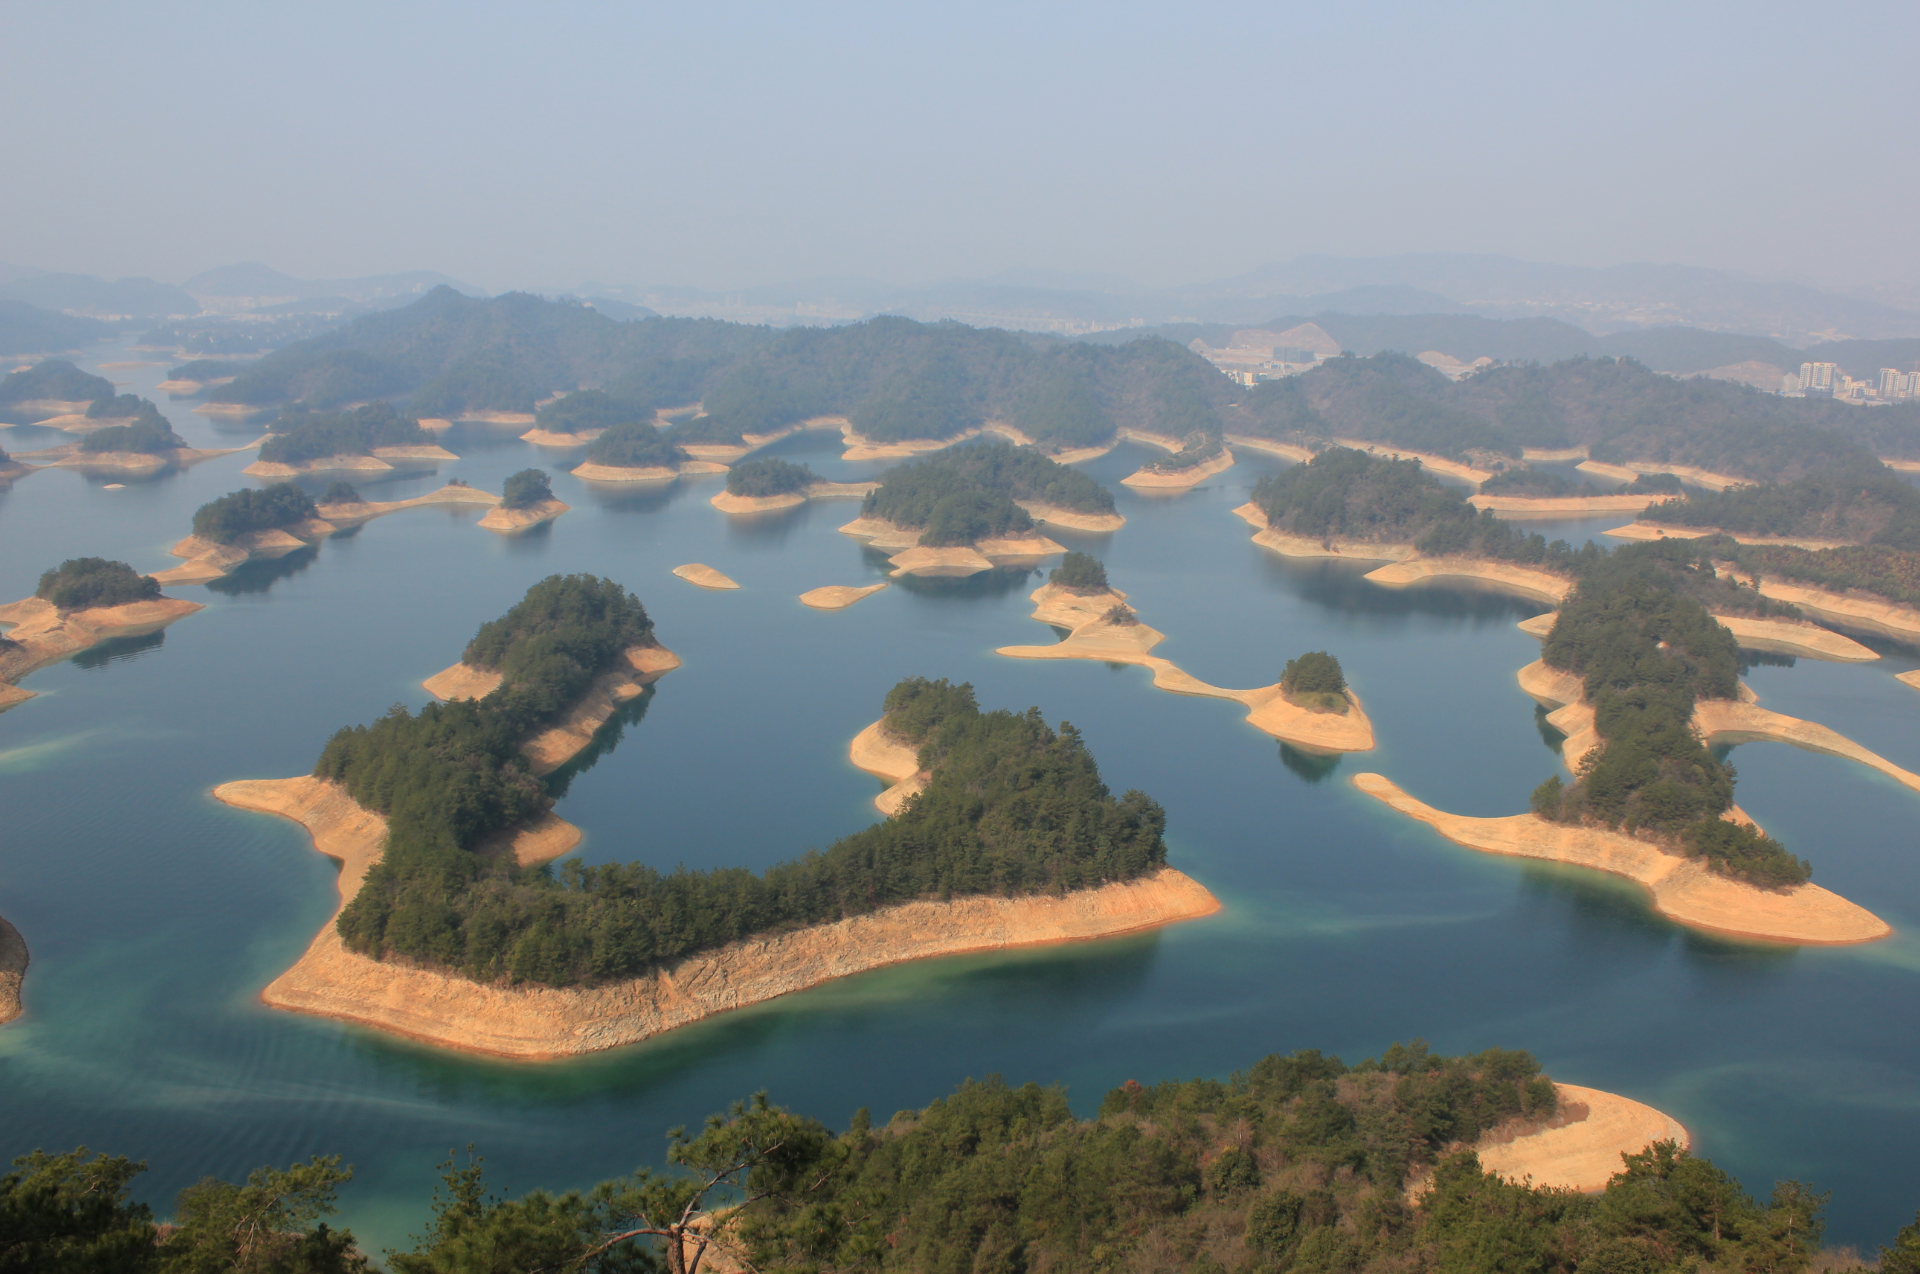 Dive sites: Qiandao Lake / Xin'anjiang Reservoir